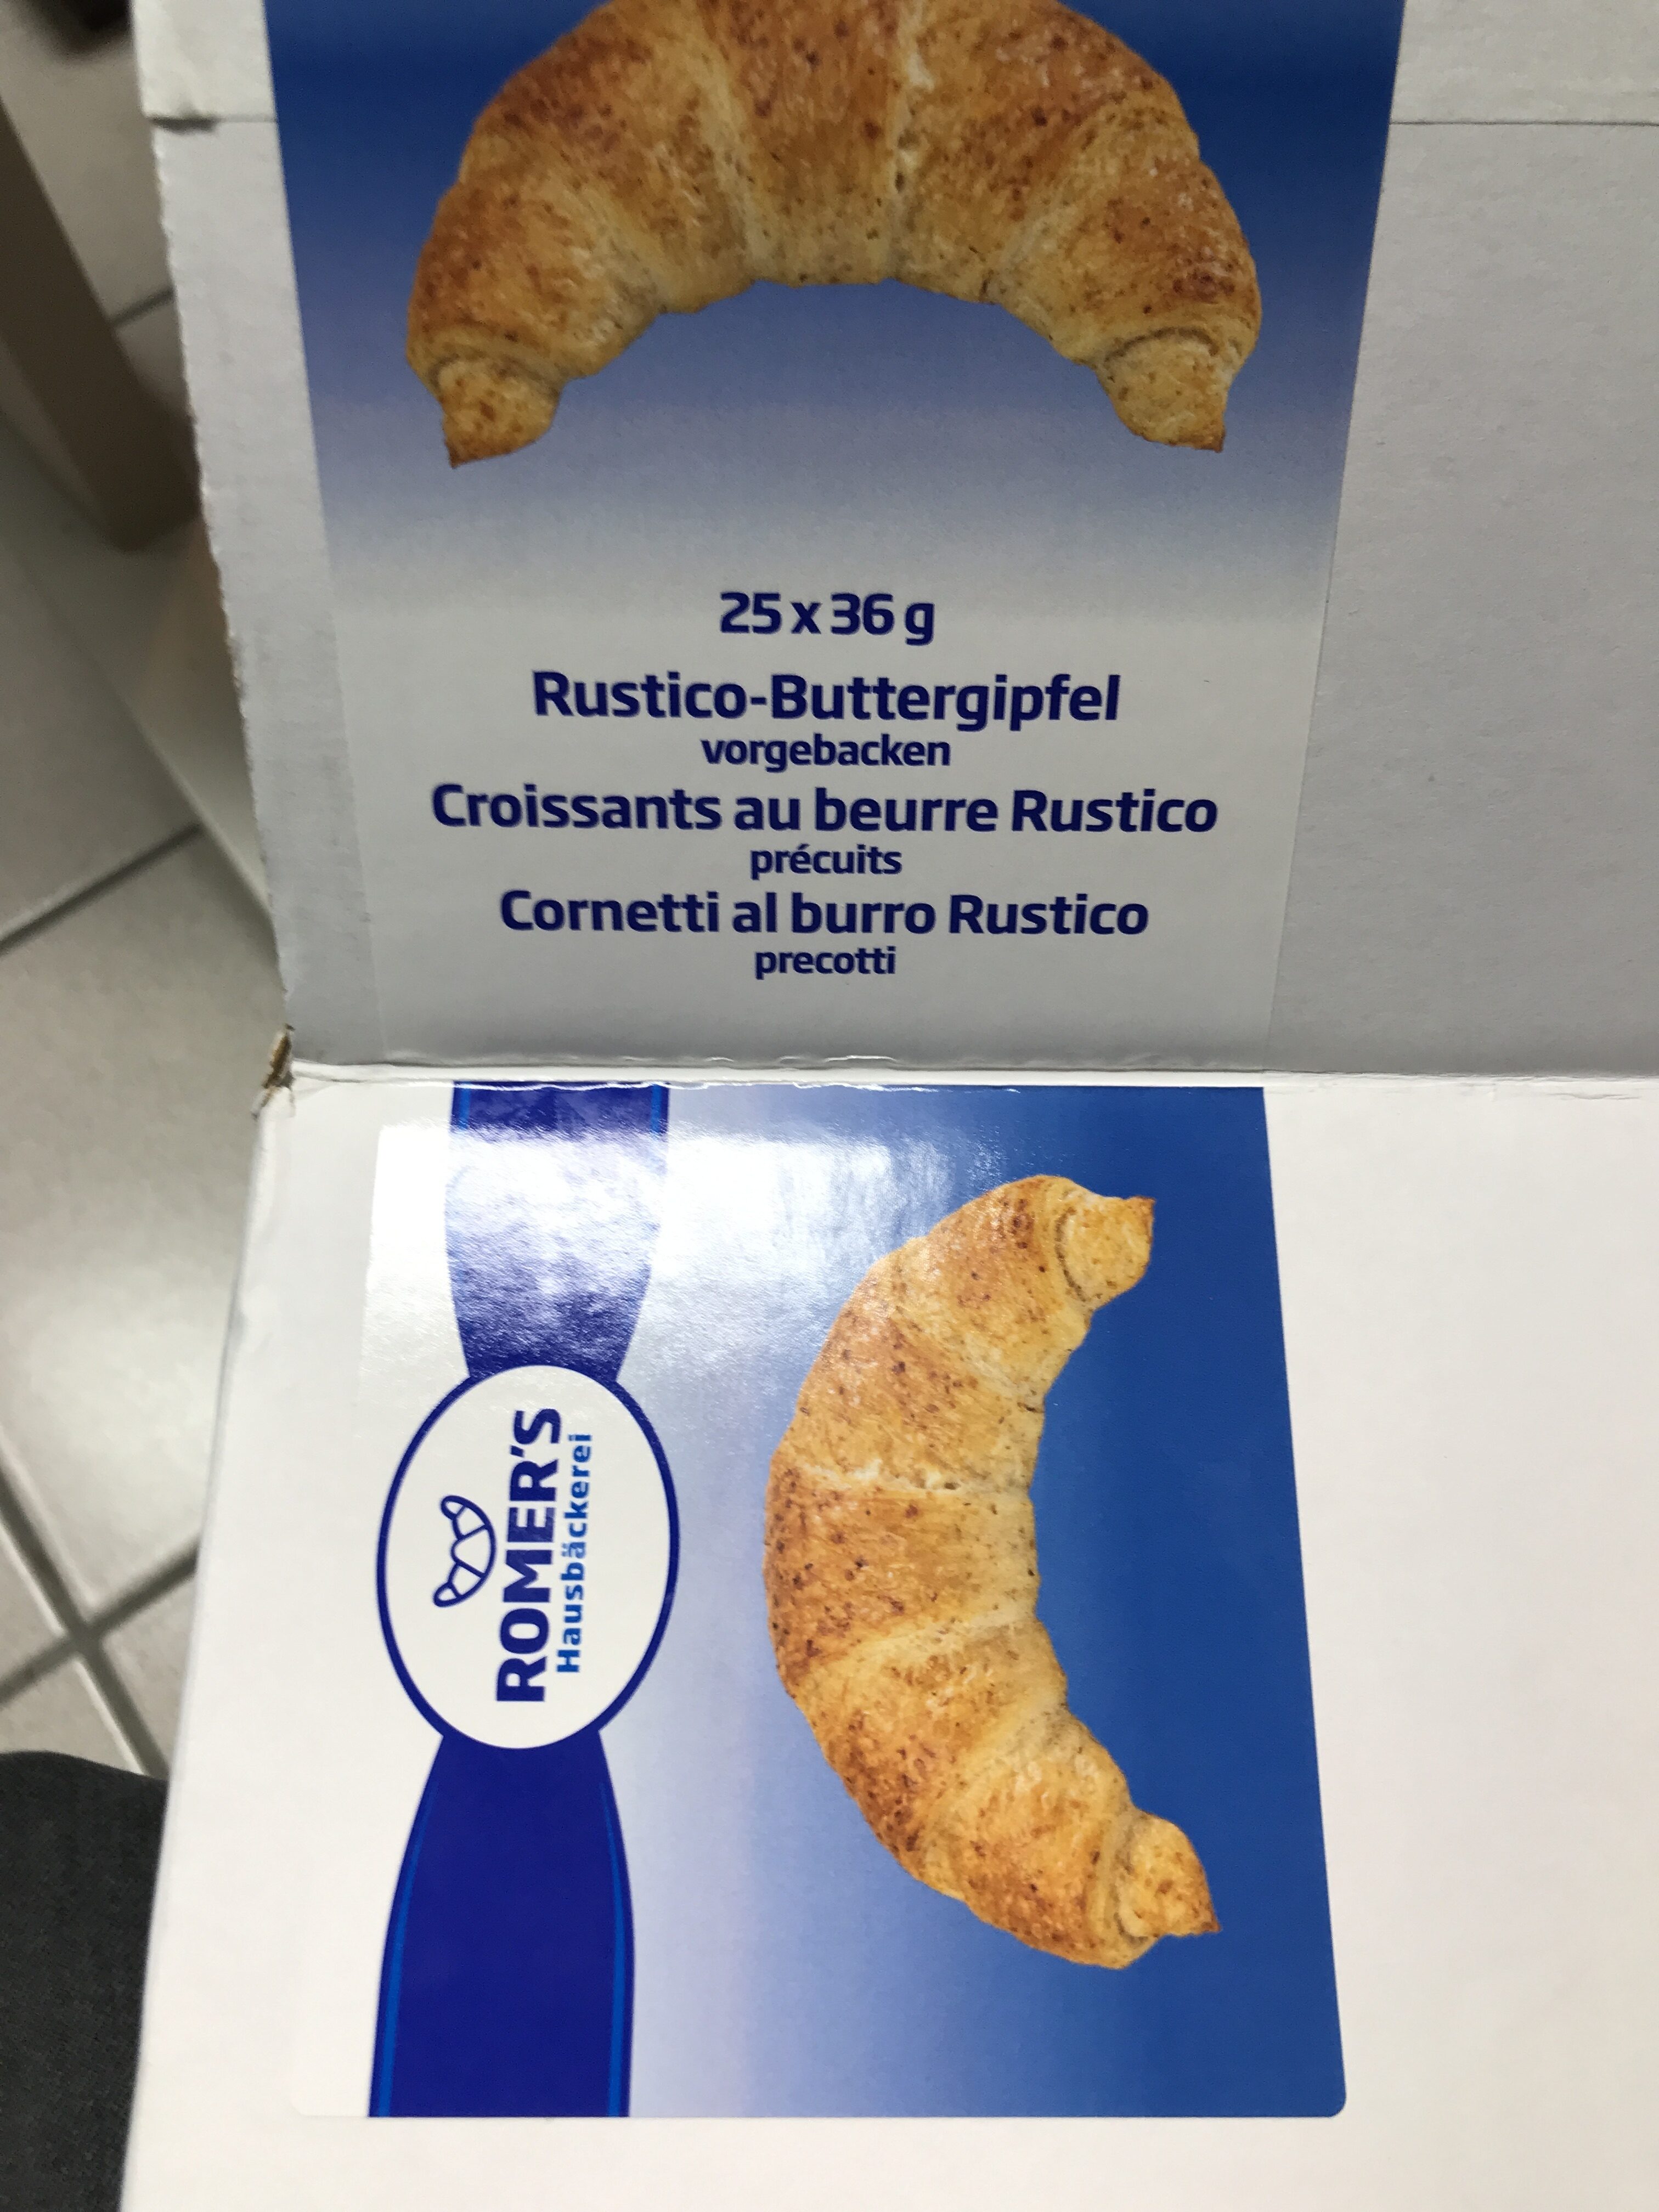 Rustico-Buttergipfel 36g - Prodotto - en